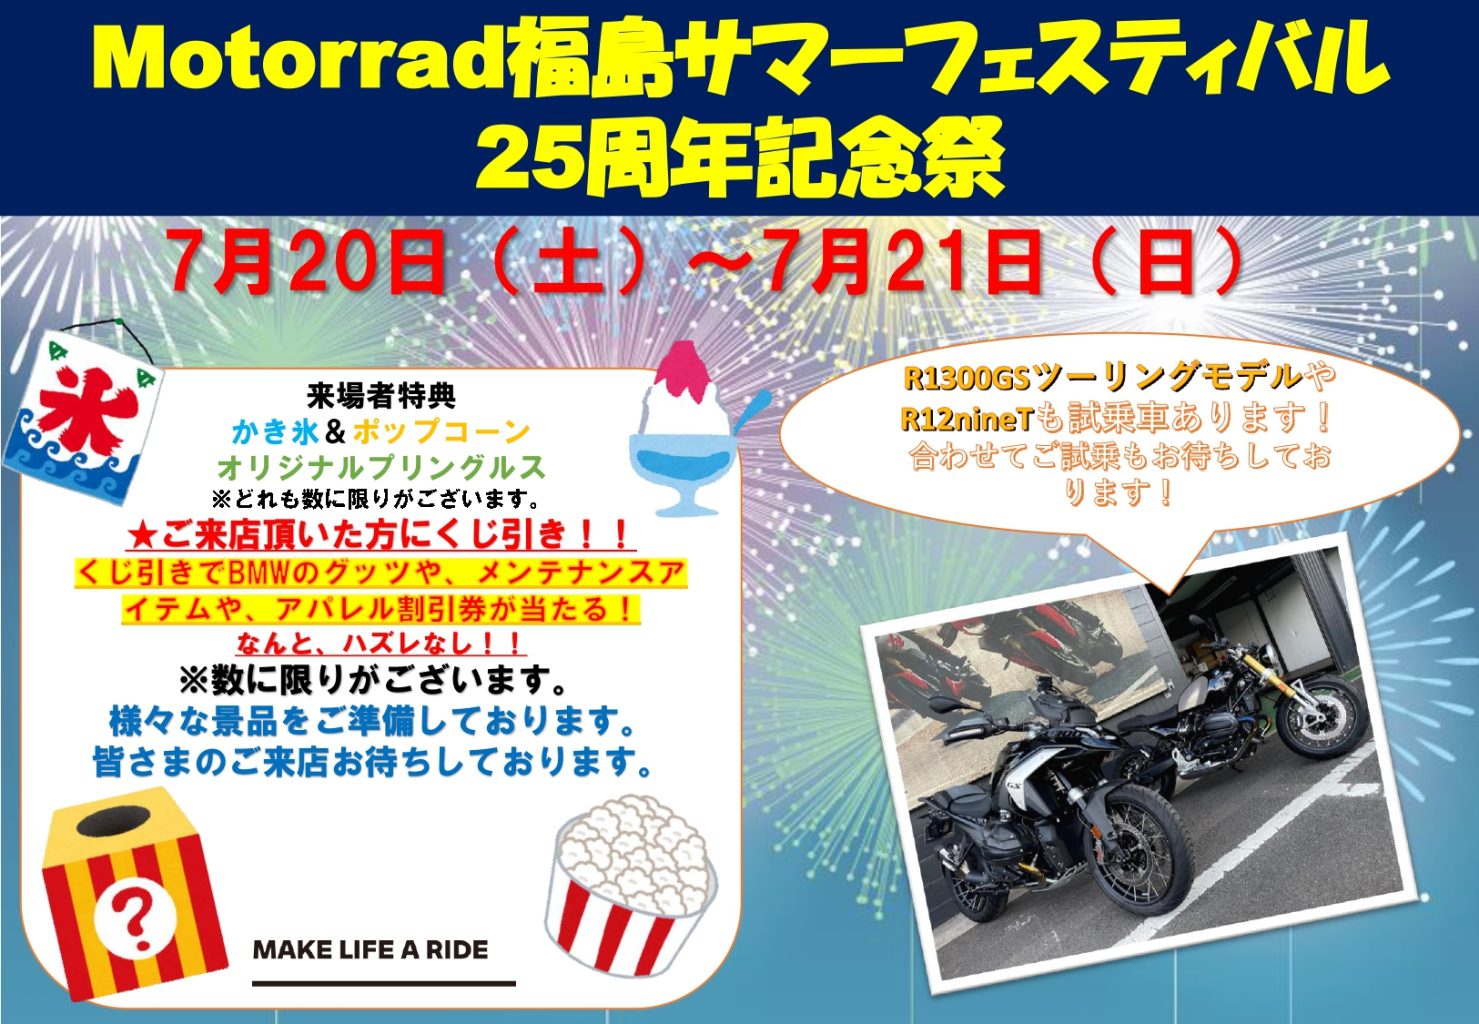 Motorrad Fukushima Summer Festival-25周年記念祭-